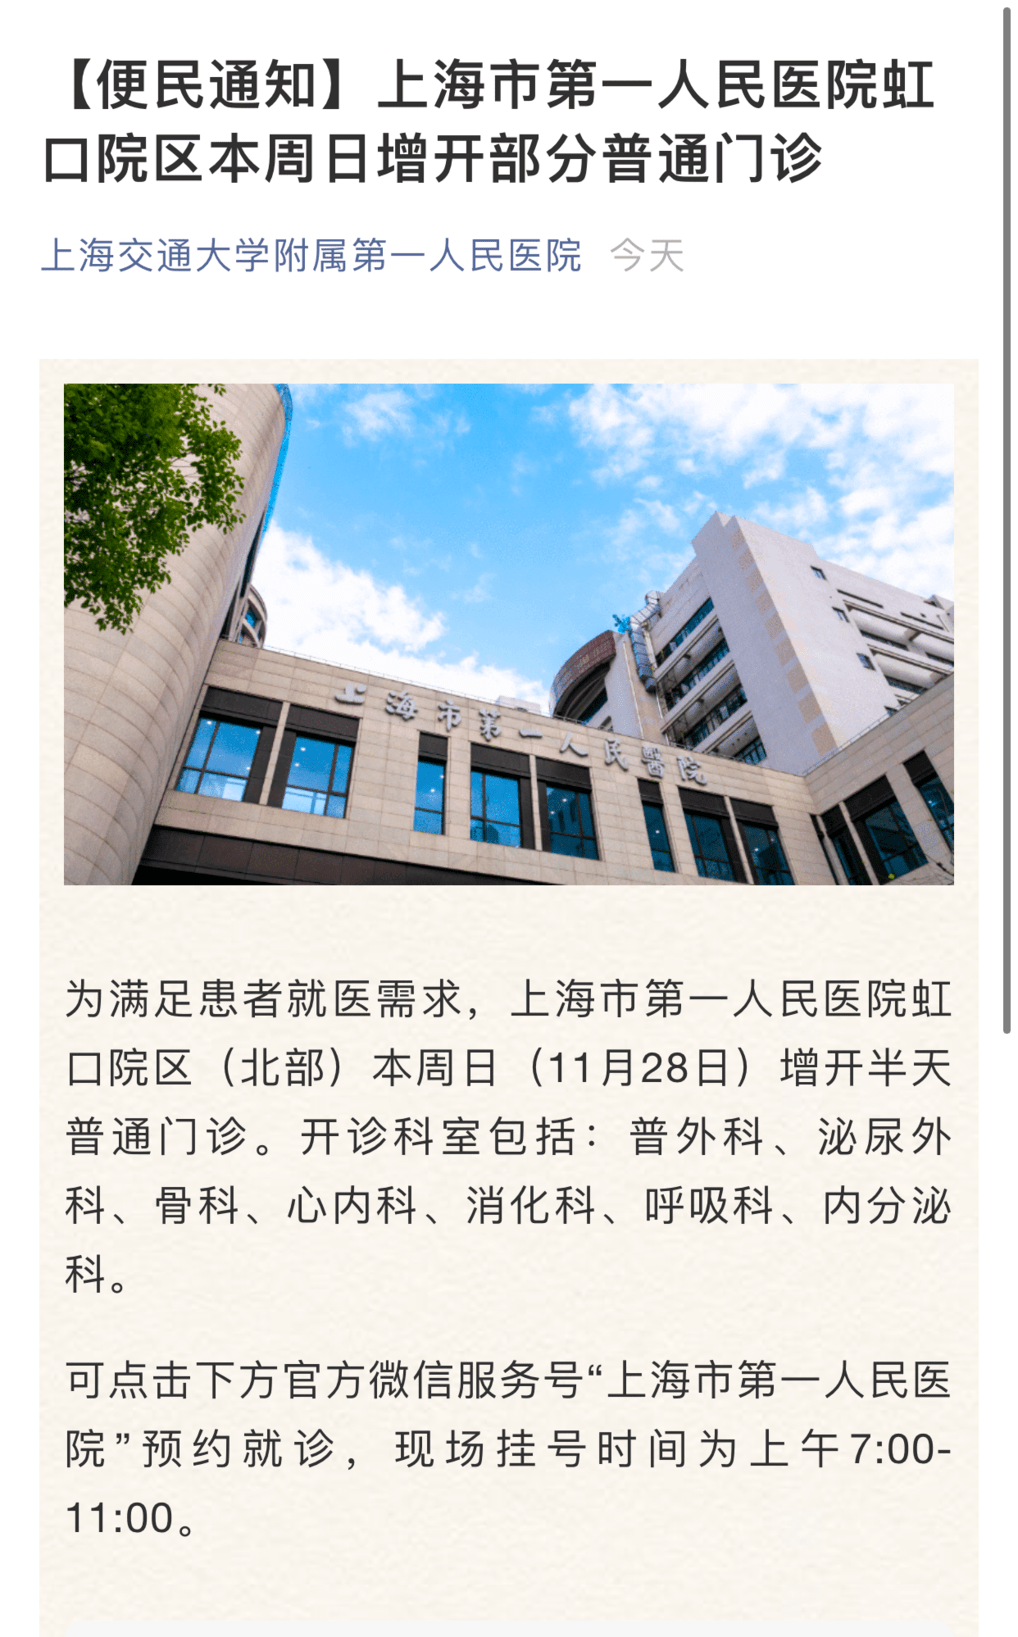 包含北京中医药大学东方医院挂号号贩子联系方式第一时间安排的词条